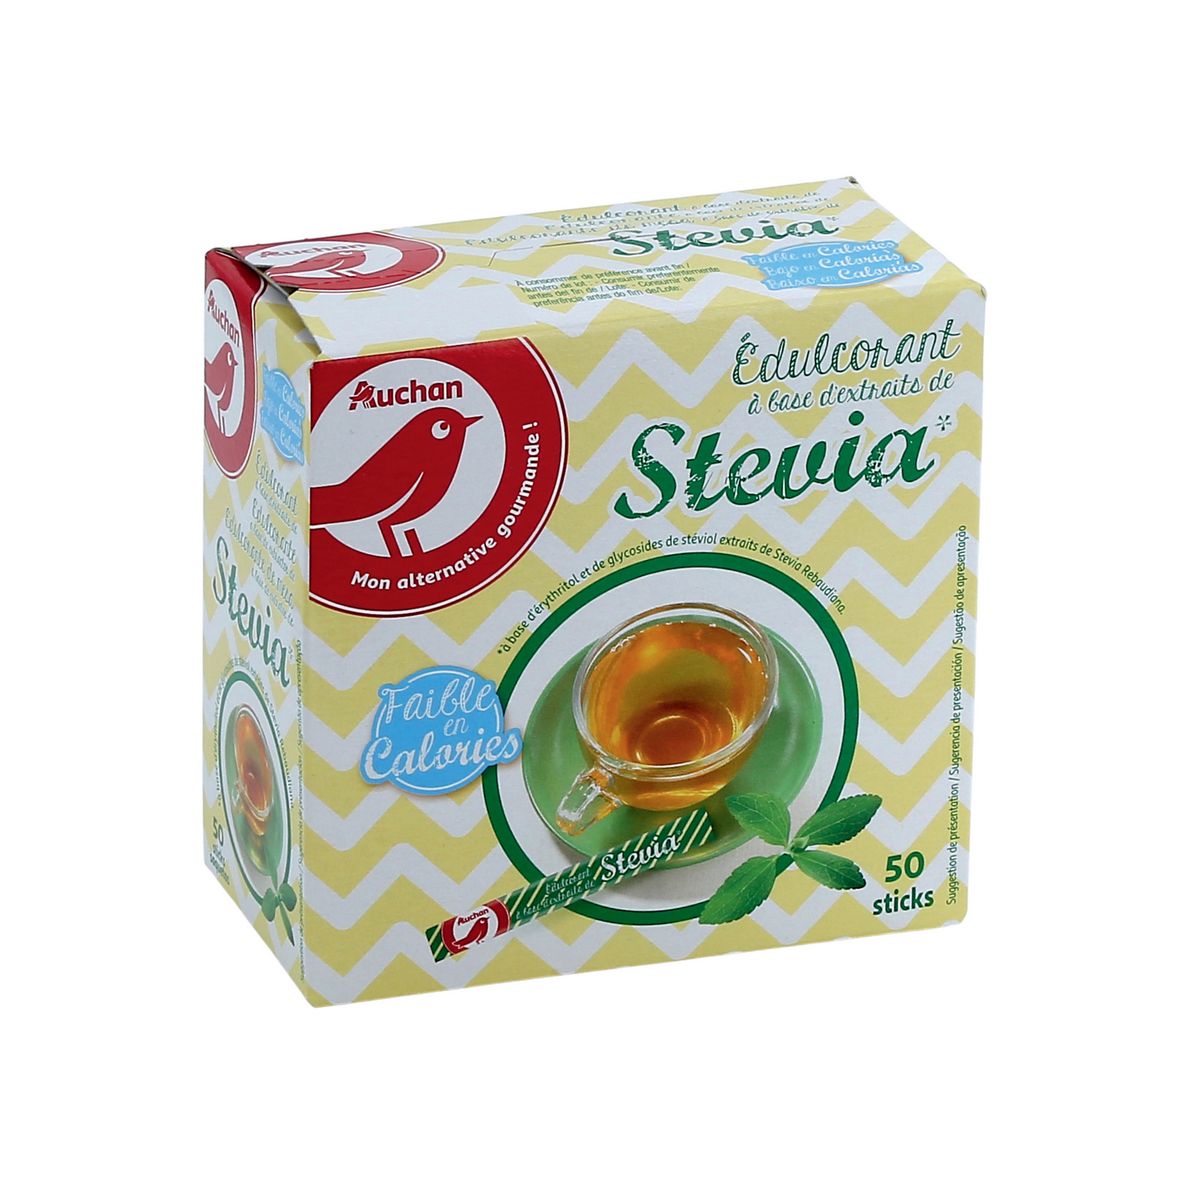 AUCHAN Edulcorant en poudre à base de stevia 50 sticks 50g